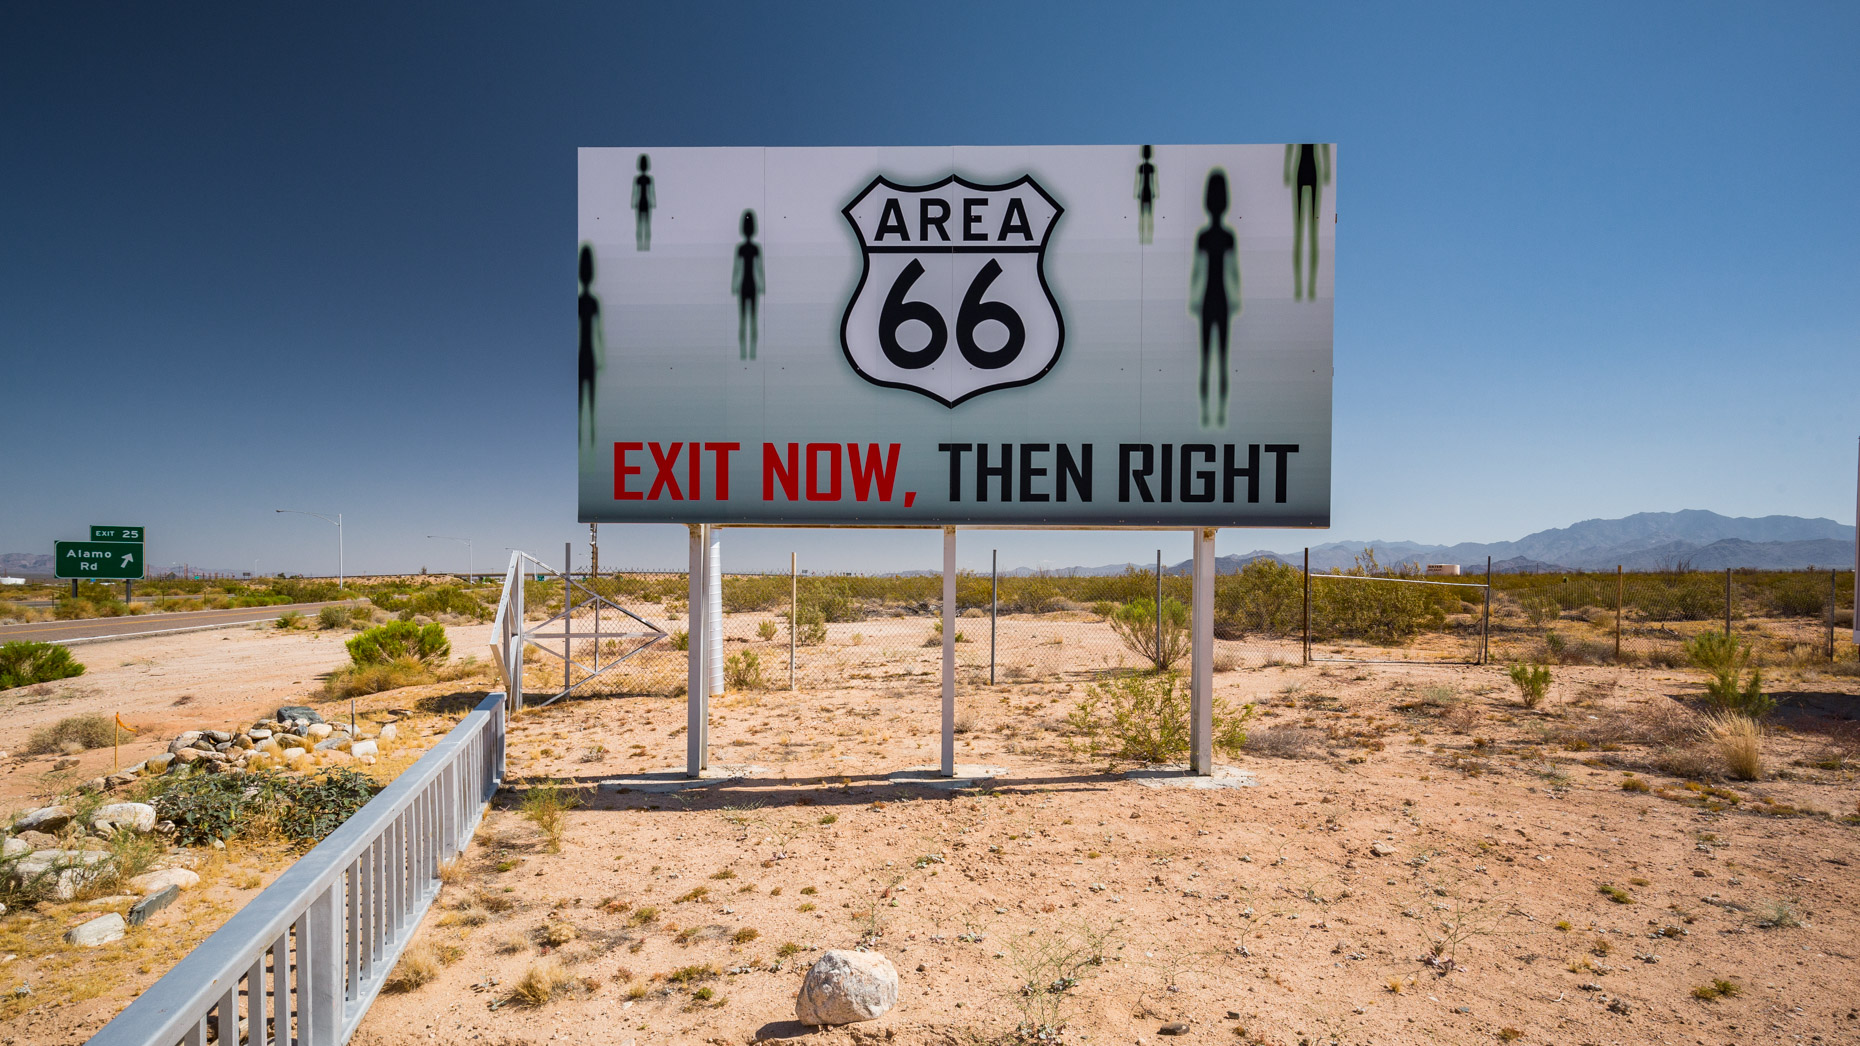 Area 66, Yucca, Arizona